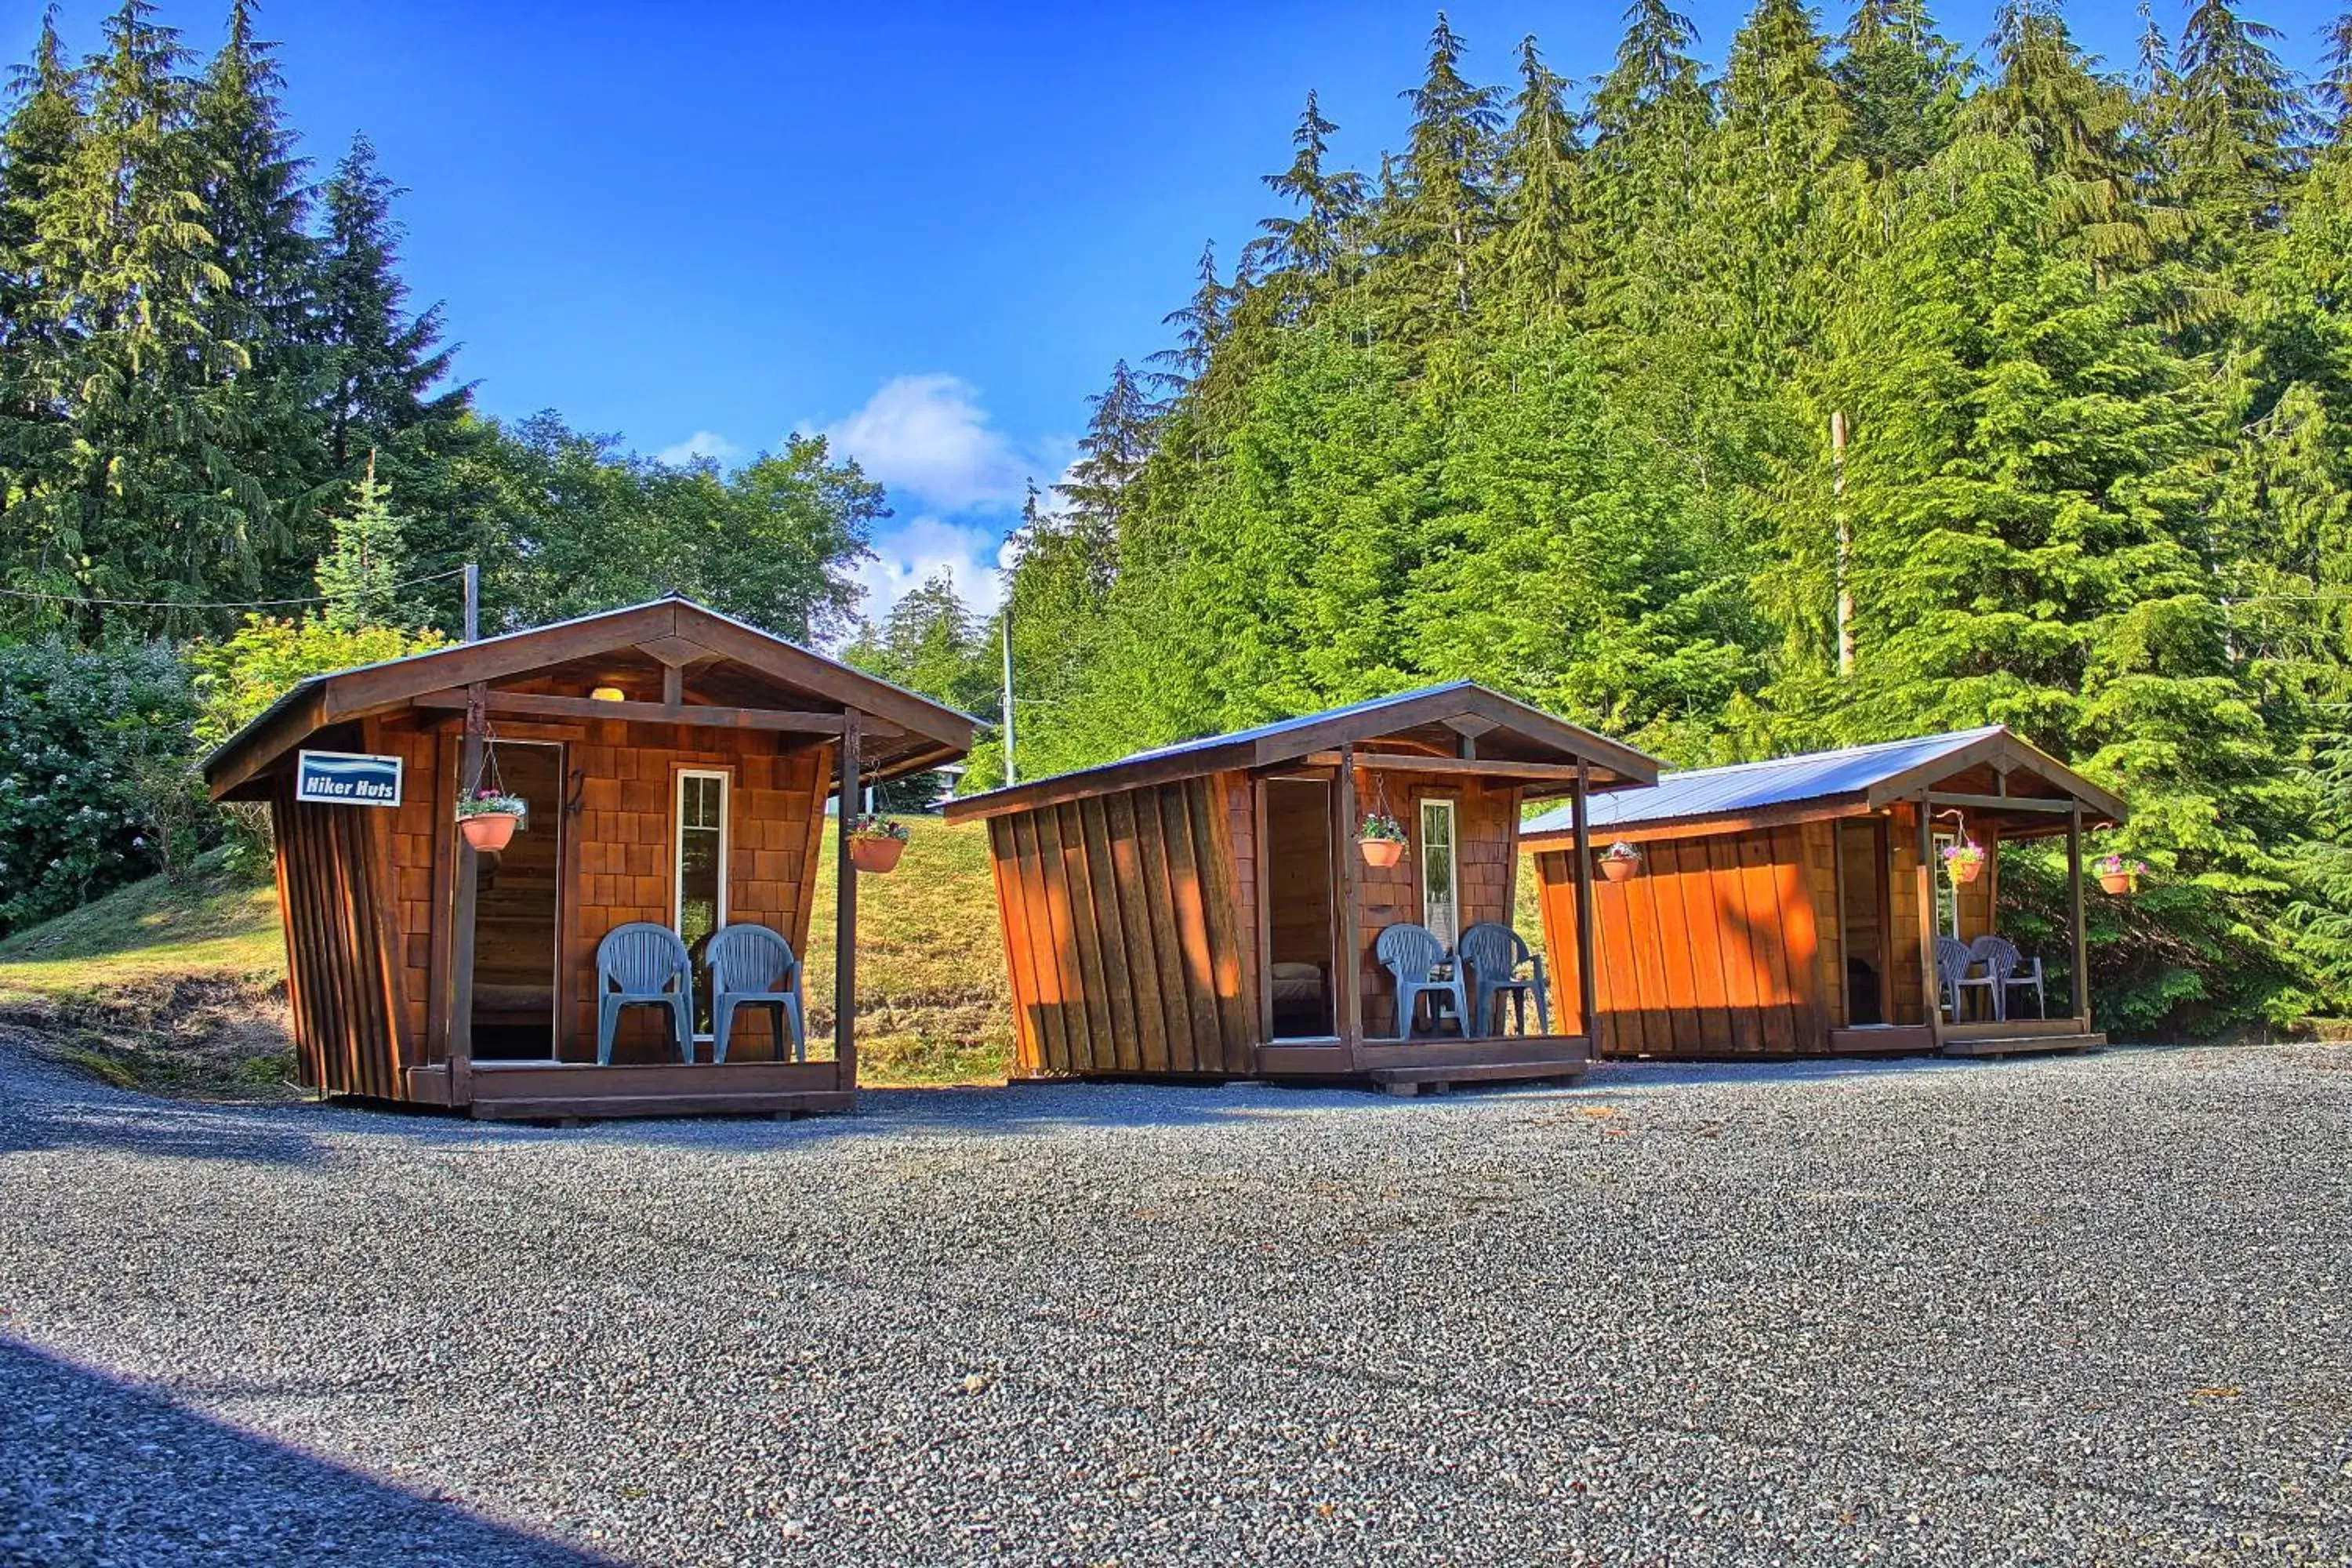 Property Building in Wild Coast Wilderness Resort